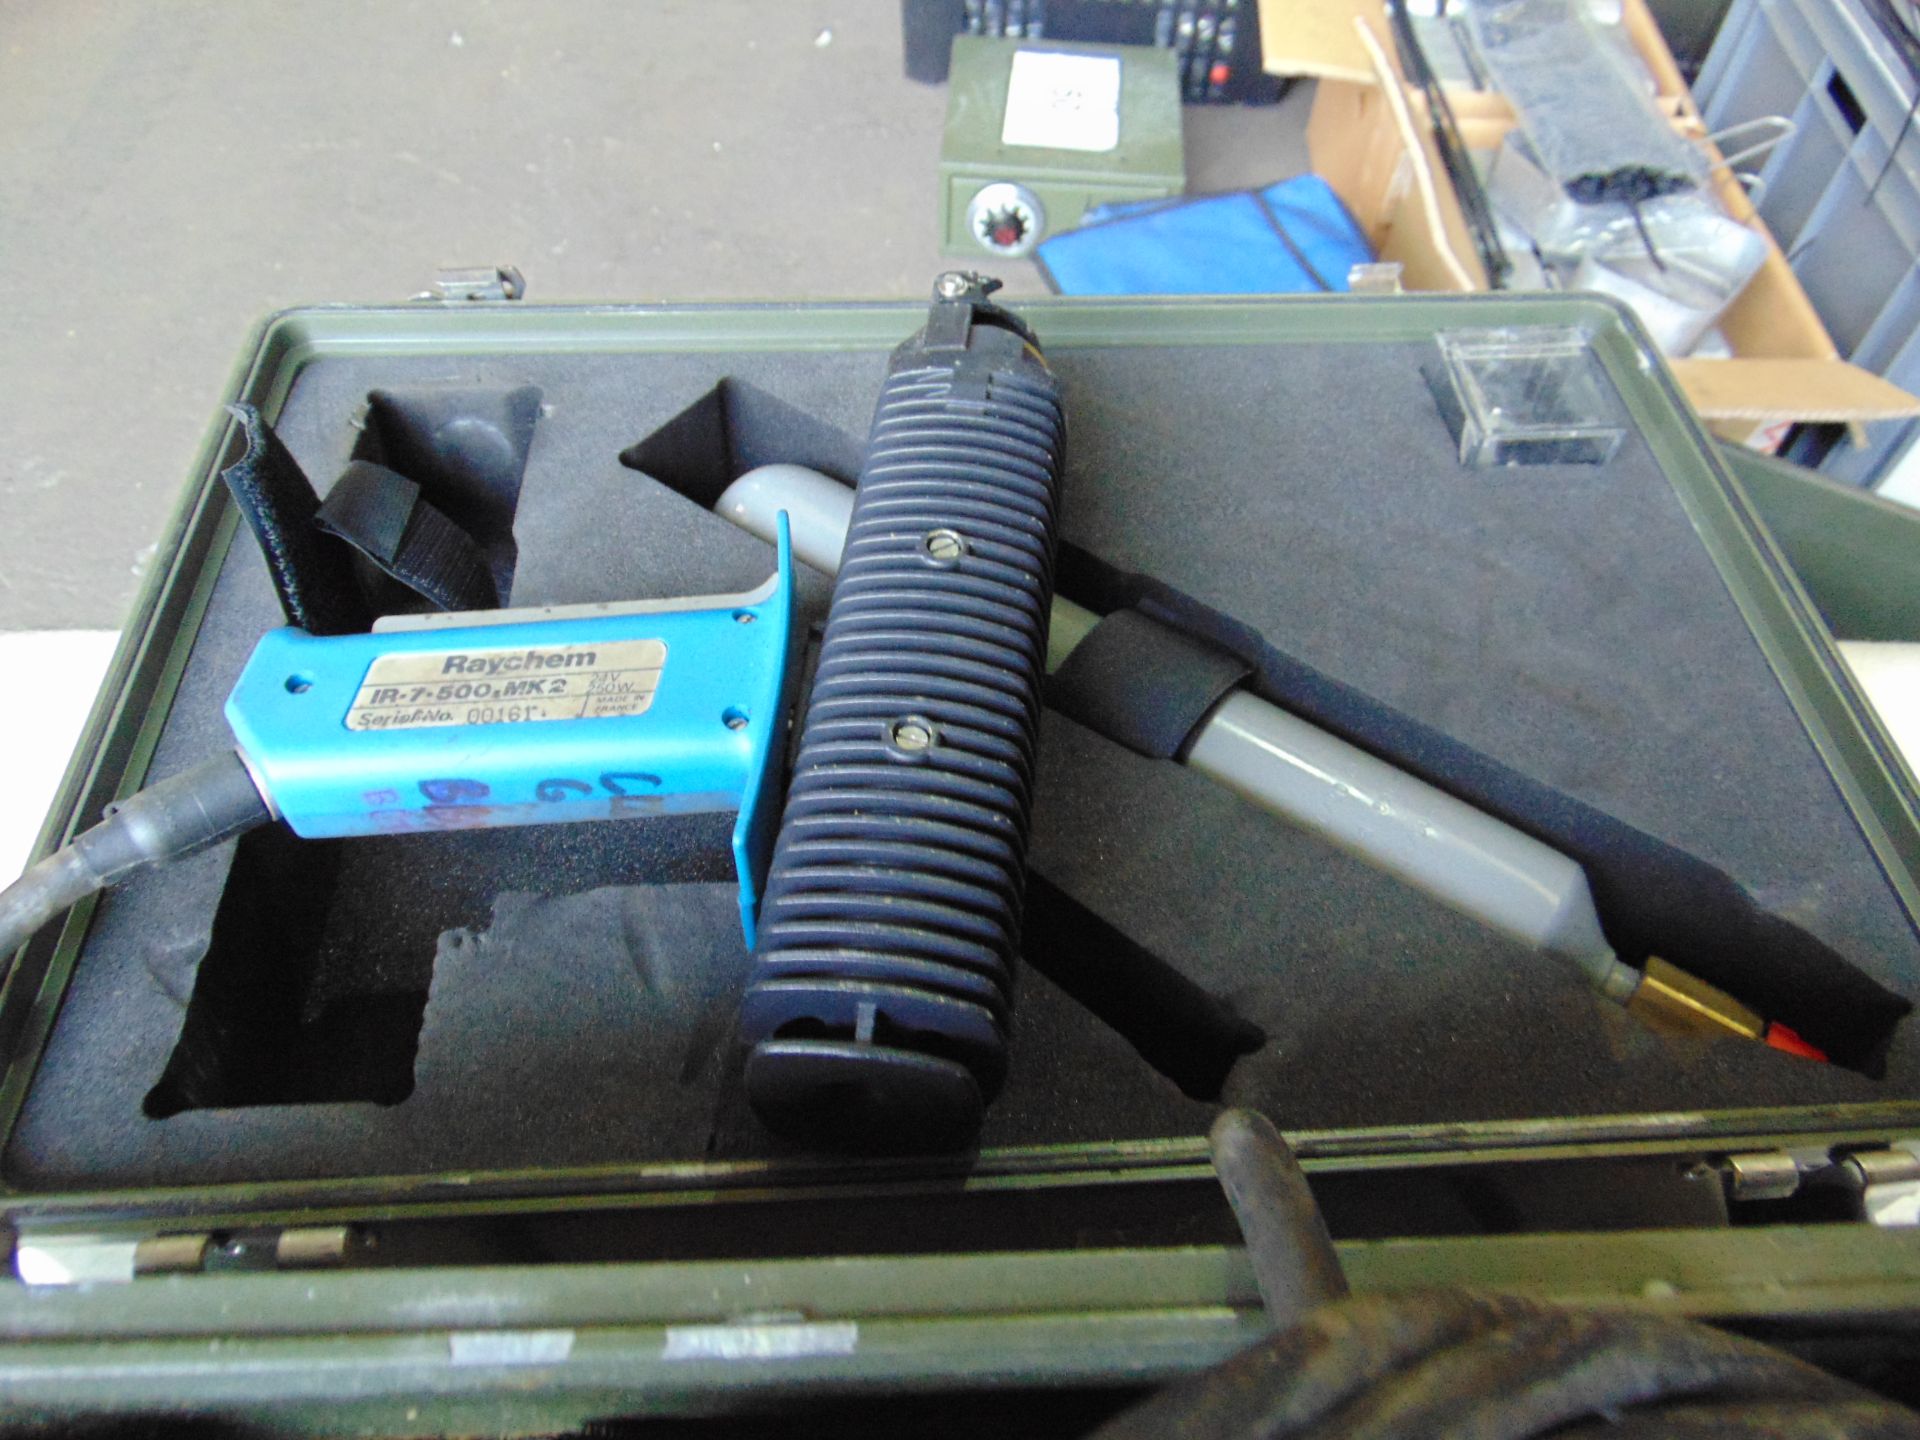 Raychem Heat Source Gun and Equipment - Image 4 of 5